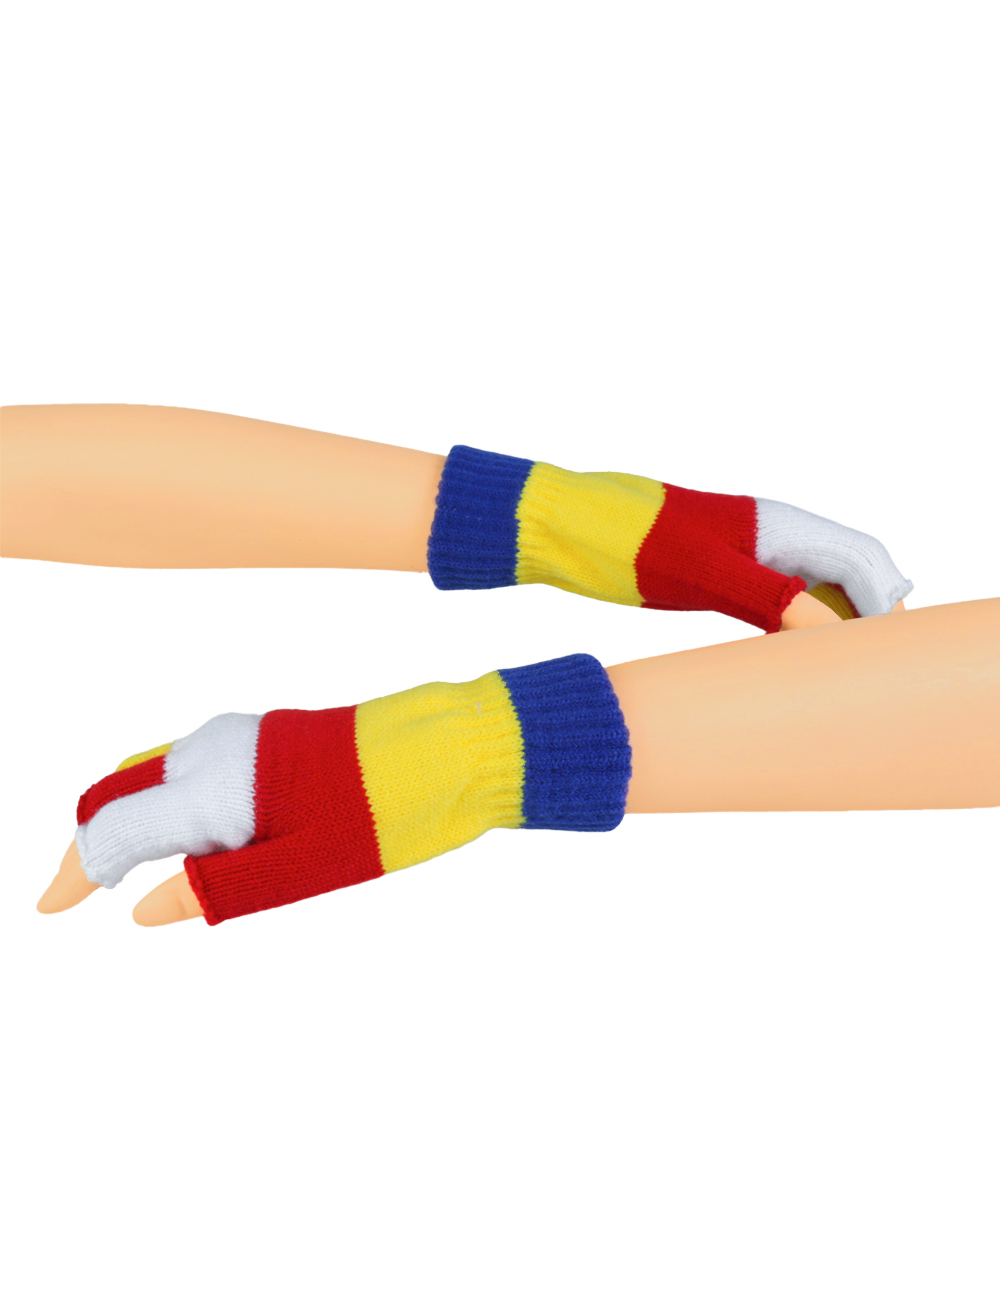 Strickhandschuhe fingerlos rot/weiß/blau/gelb